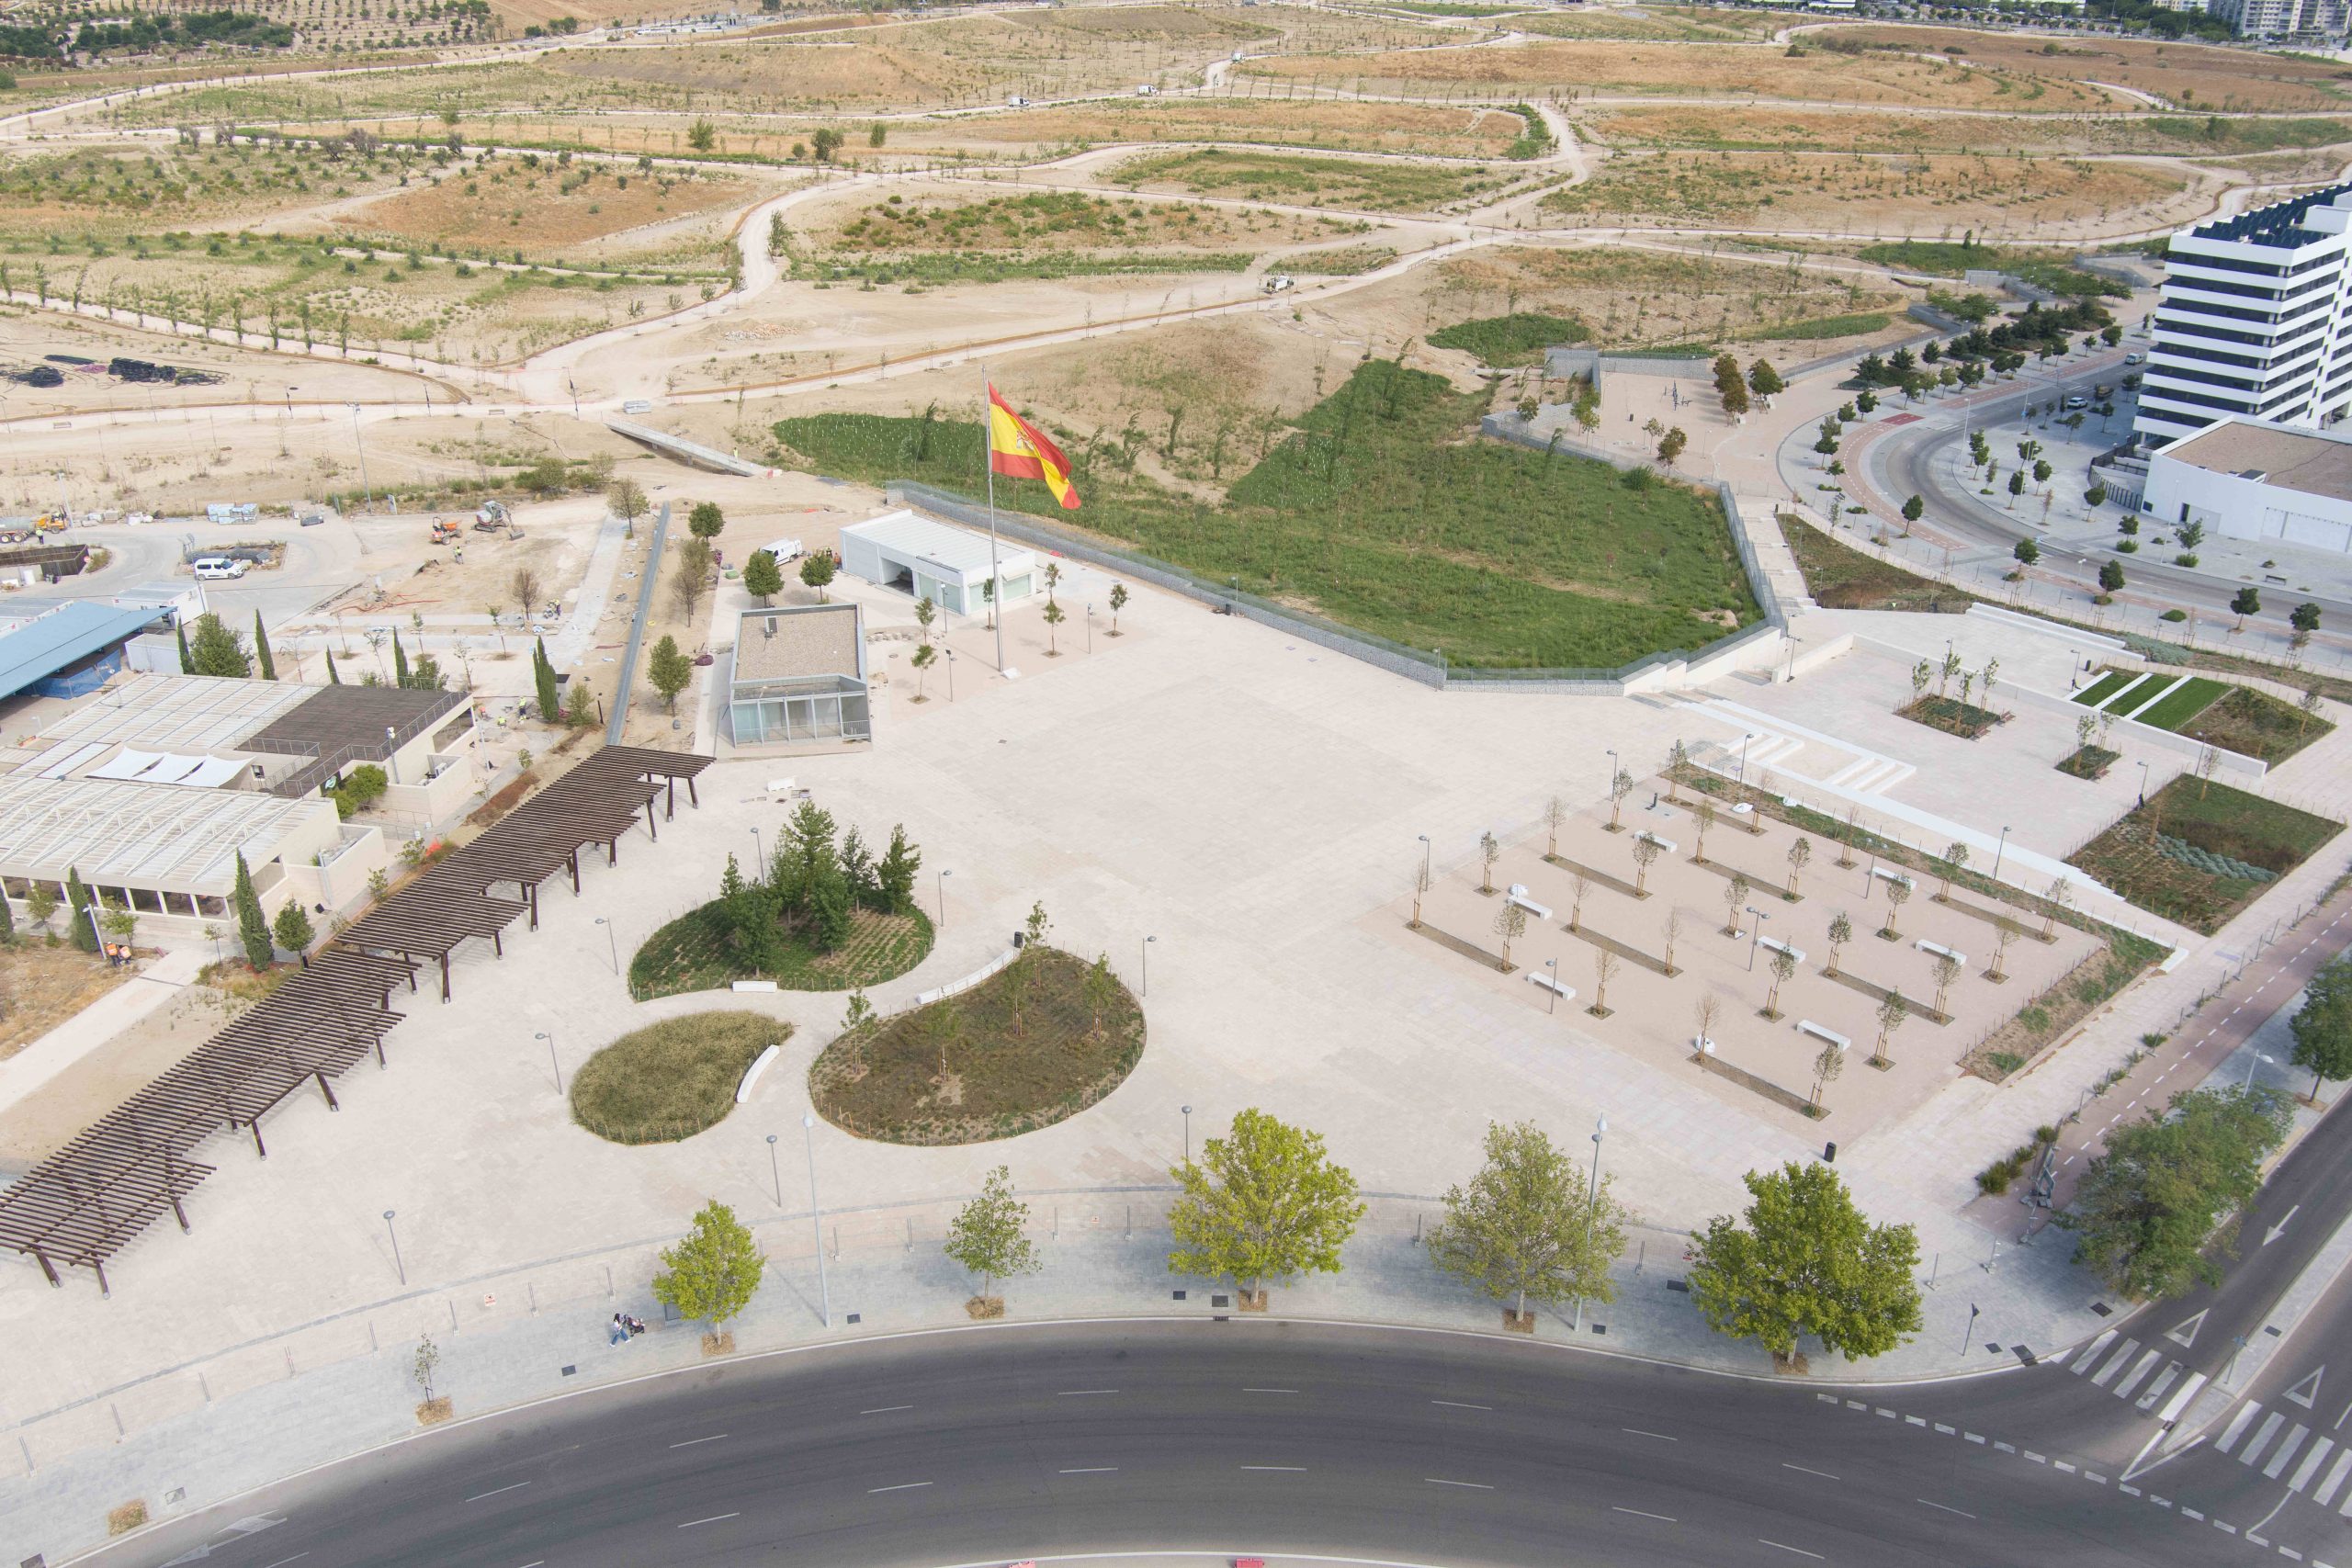 Proyecto que remata la fachada urbana del parque de Valdebebas